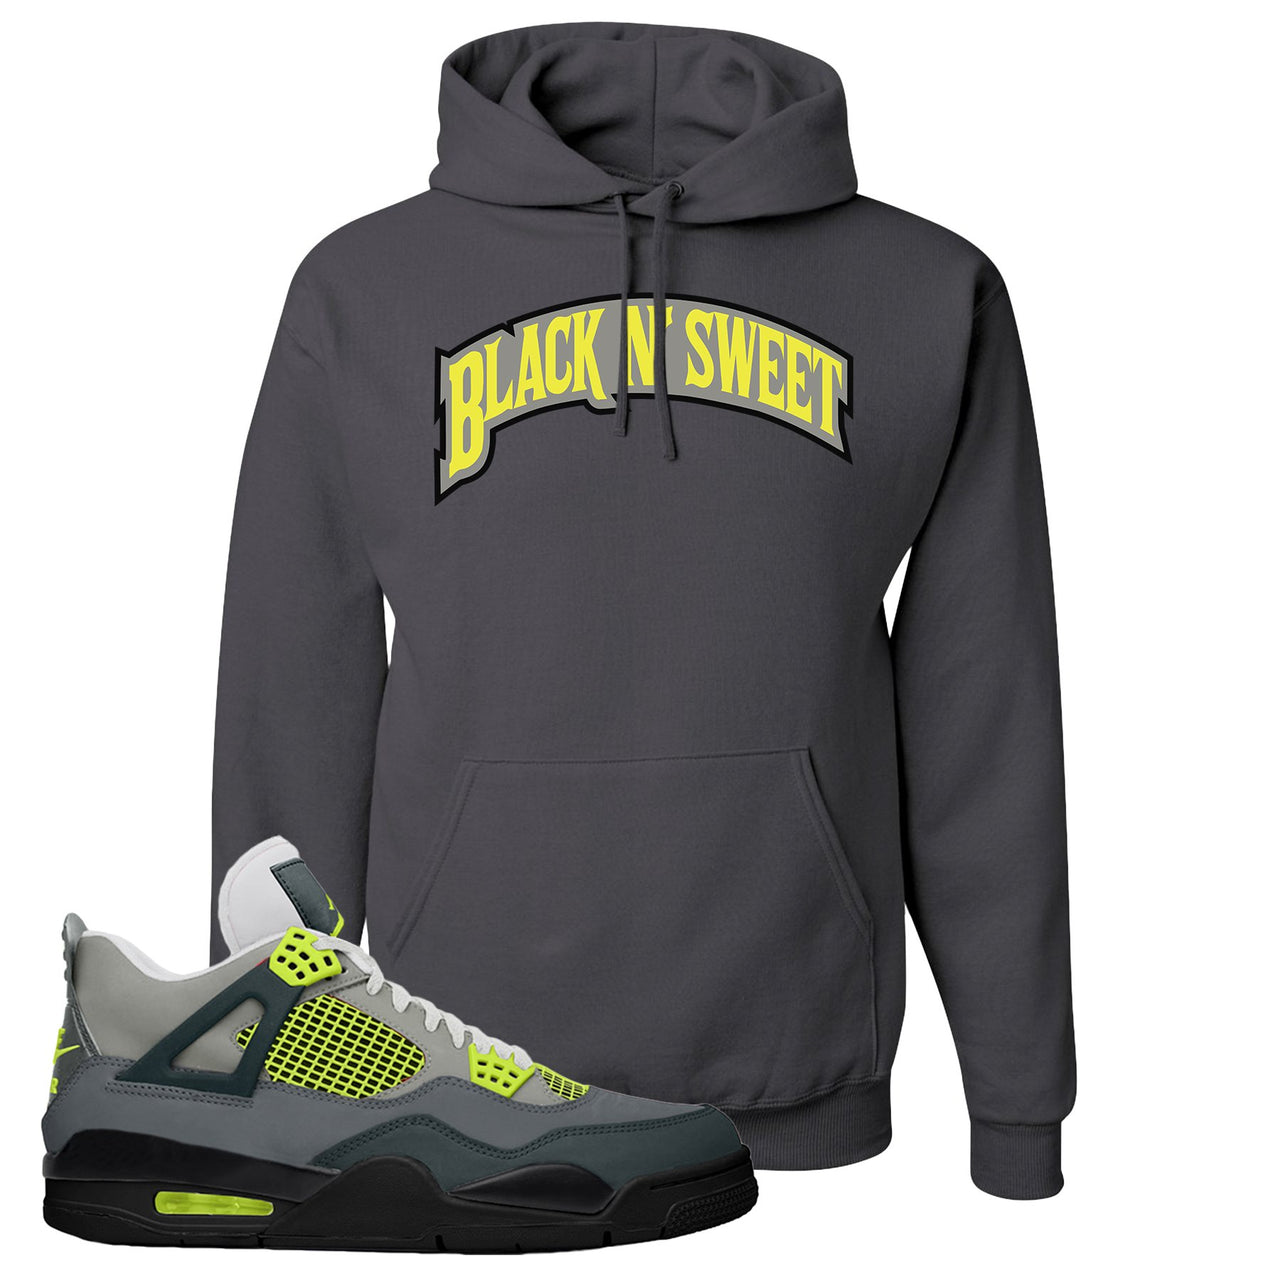 Jordan 4 Neon Sneaker Charcoal Gray Pullover Hoodie | Hoodie to match Nike Air Jordan 4 Neon Shoes | Black N Sweet Arch